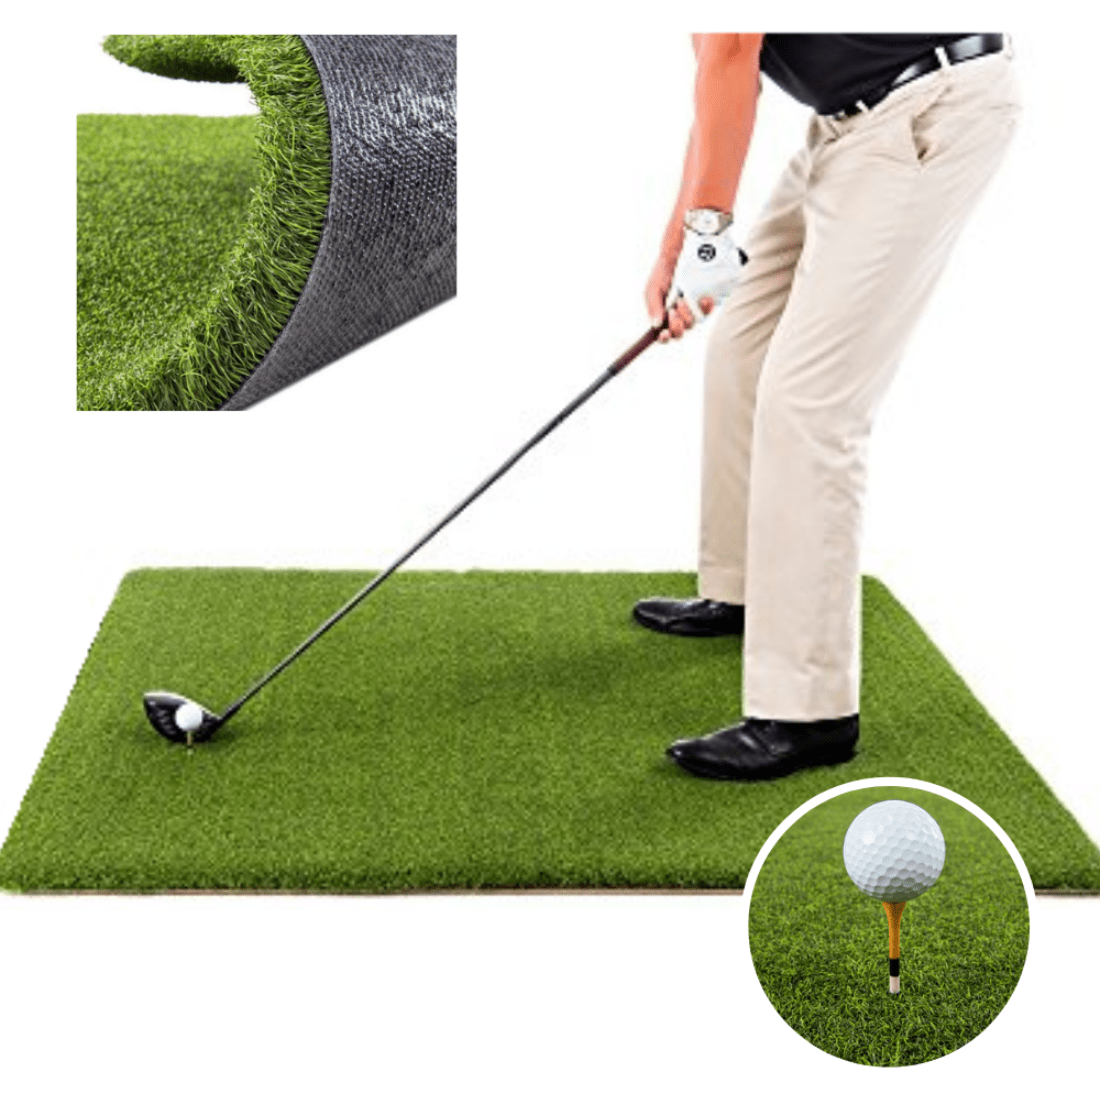 TeeStrike Pro Golf Mat, Top Tee Turf Golf Mat